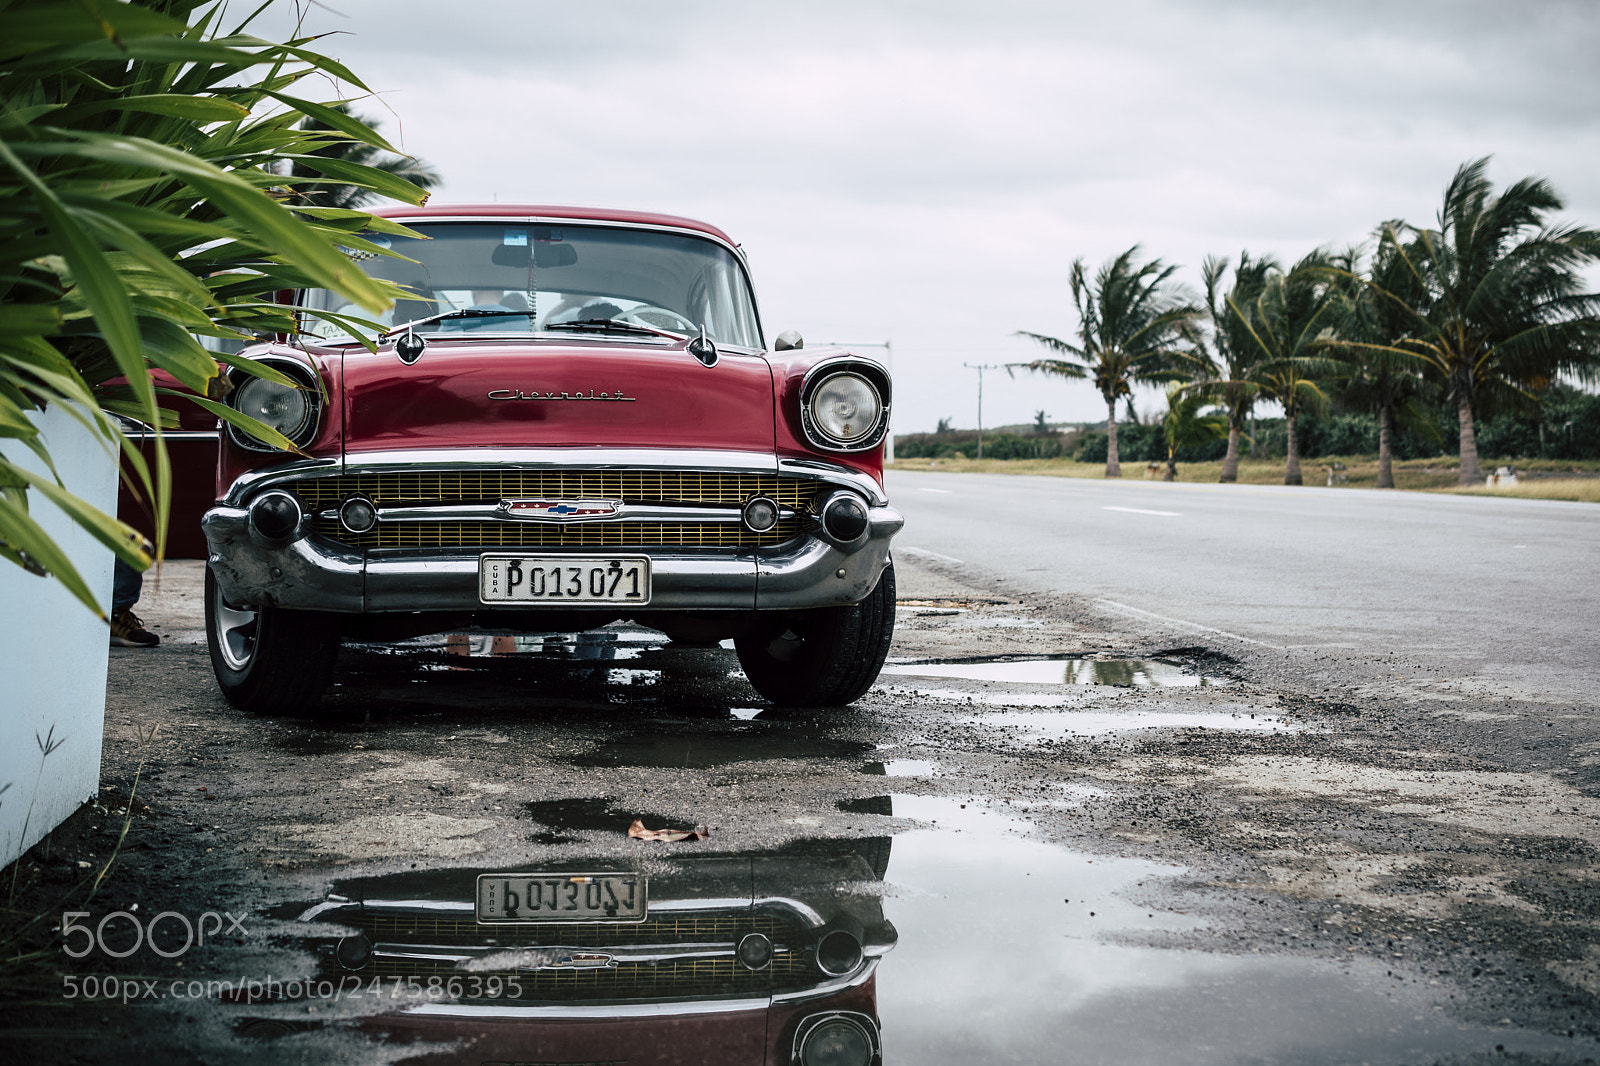 Nikon D5500 sample photo. Cuba car photography